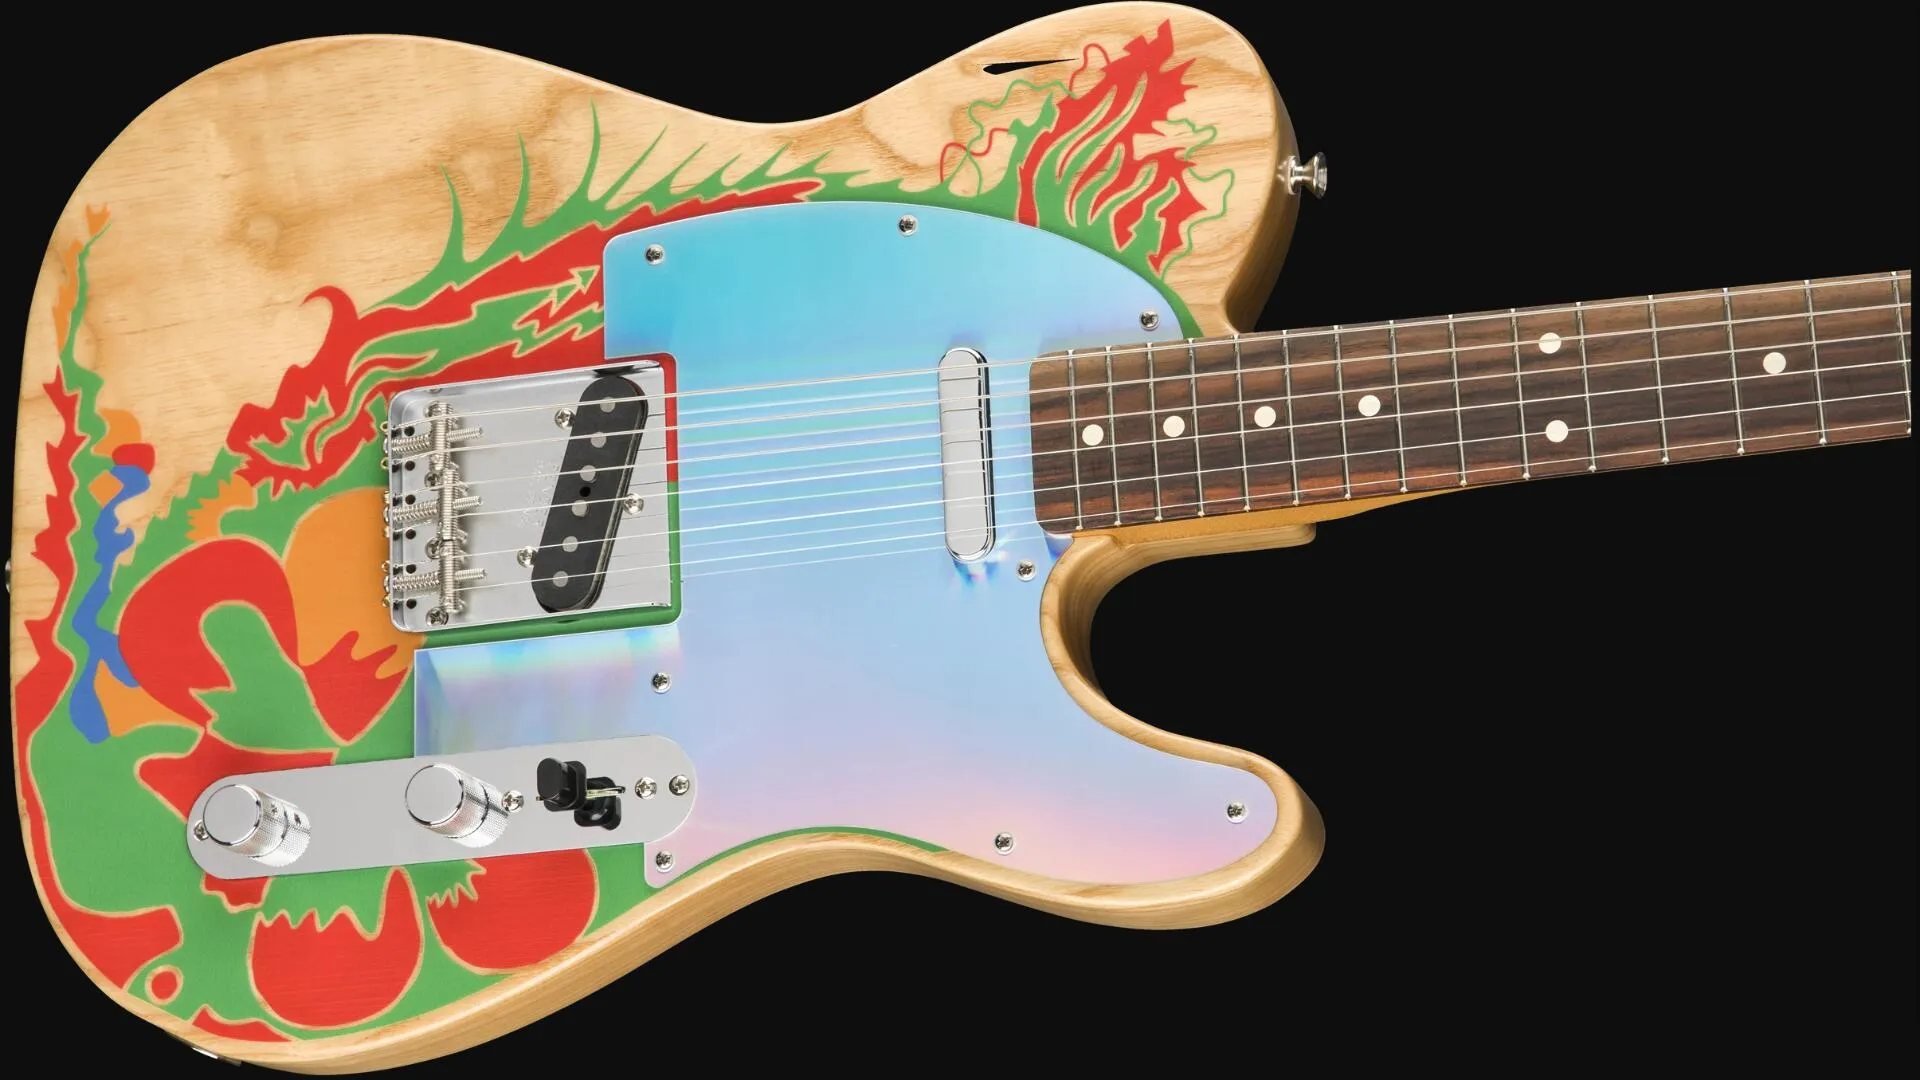 Custom Shop Masterbuilt Jimmy Page Dragon Chitarra elettrica con tastiera in palissandro, corpo in frassino naturale, motivo drago dipinto a mano di Jimmy Page